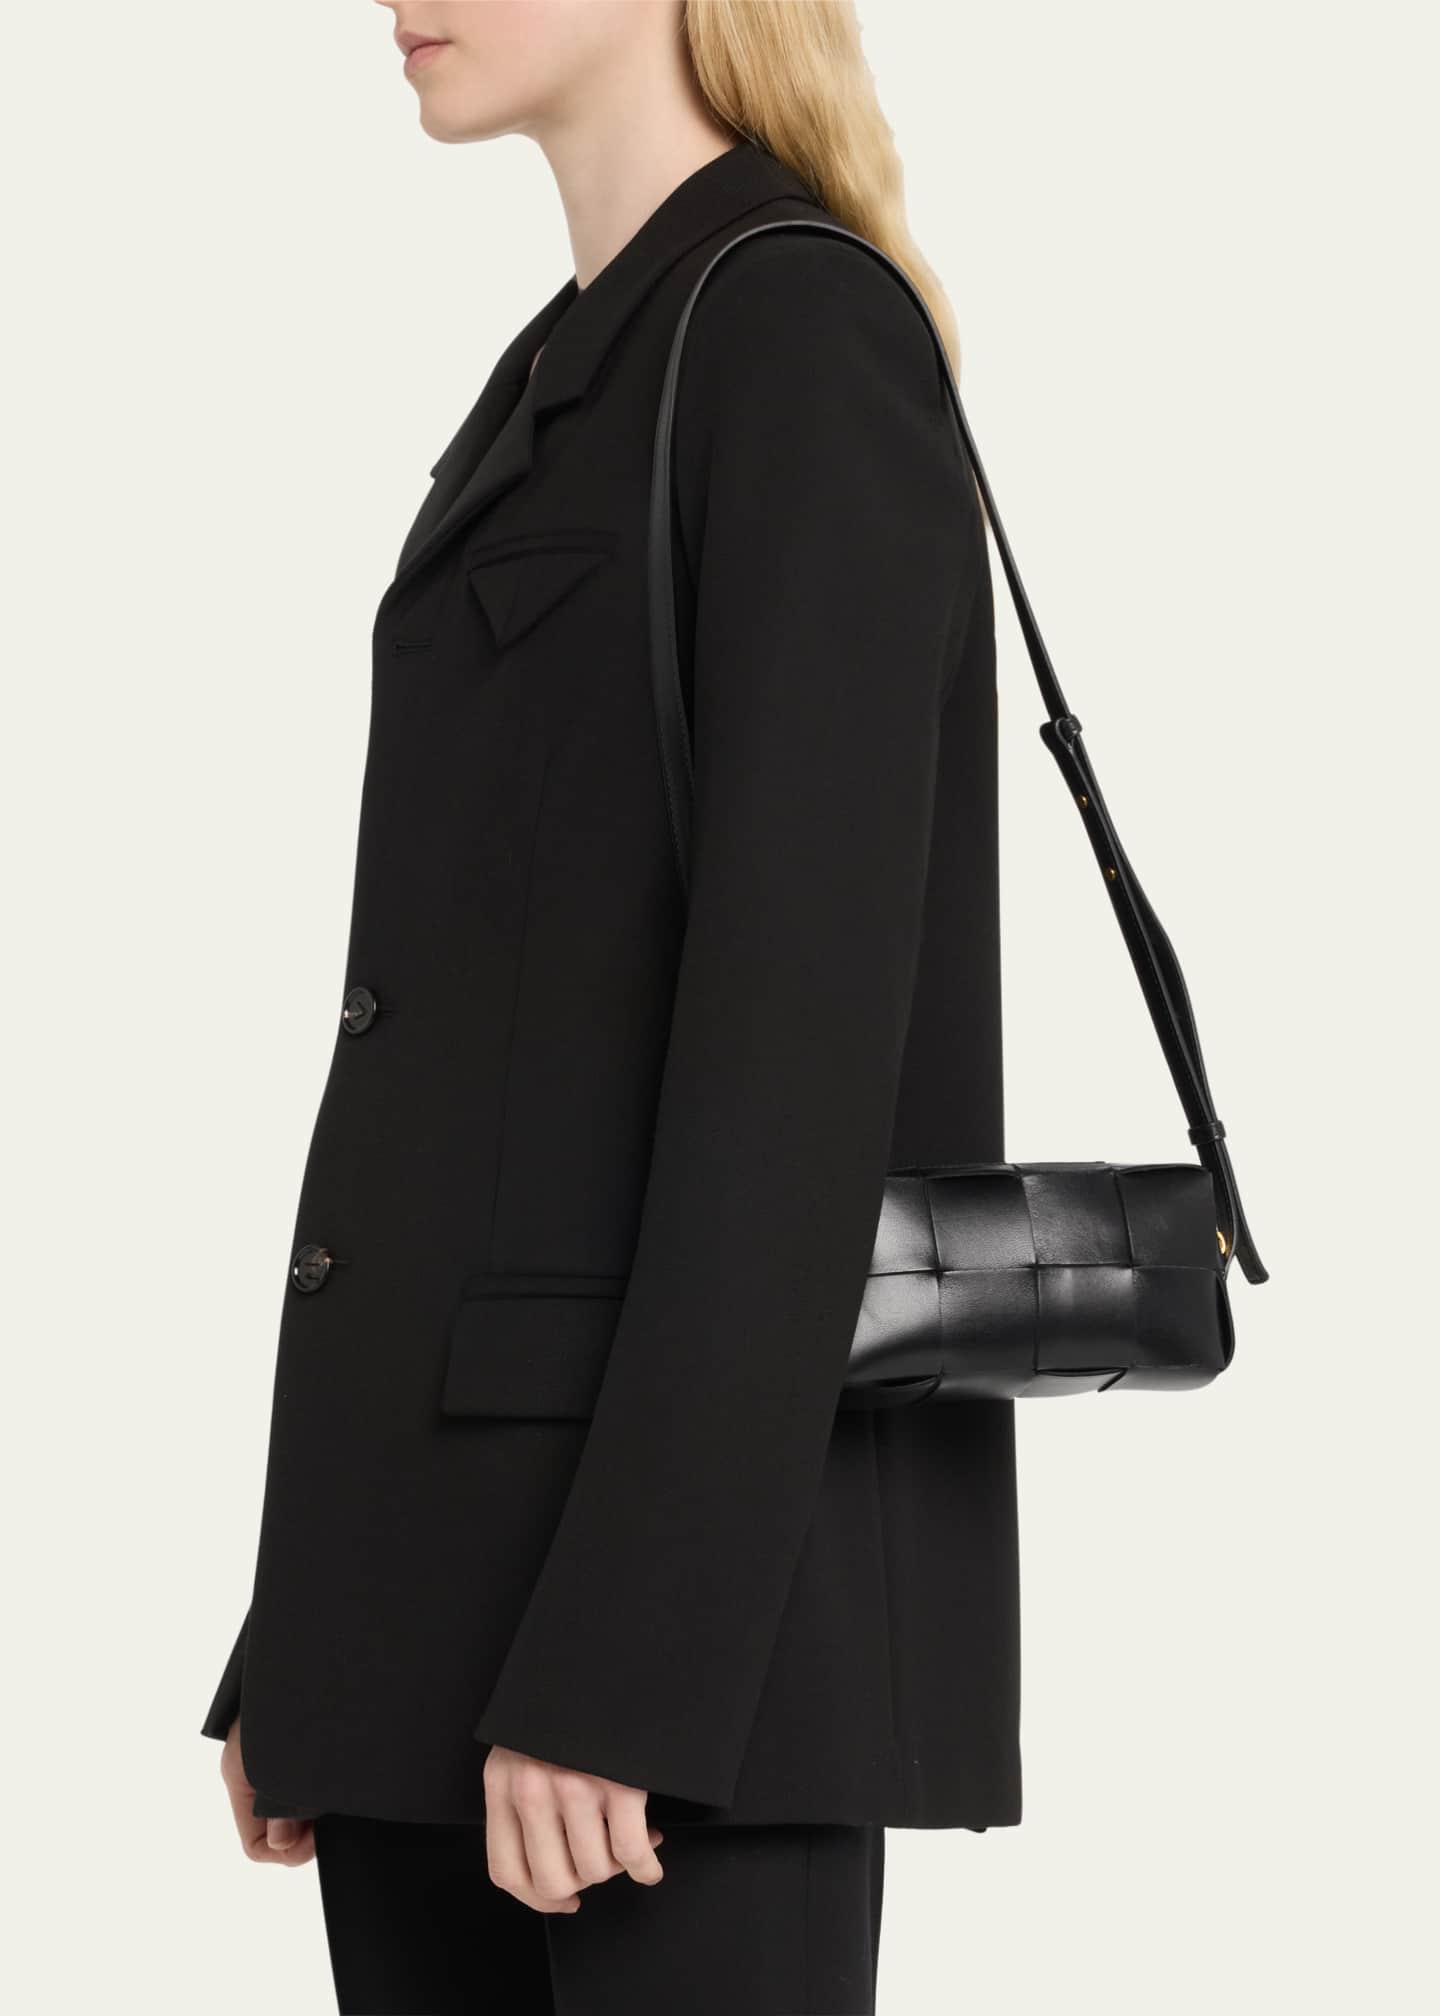 Cassette shoulder bag black - Bottega Veneta